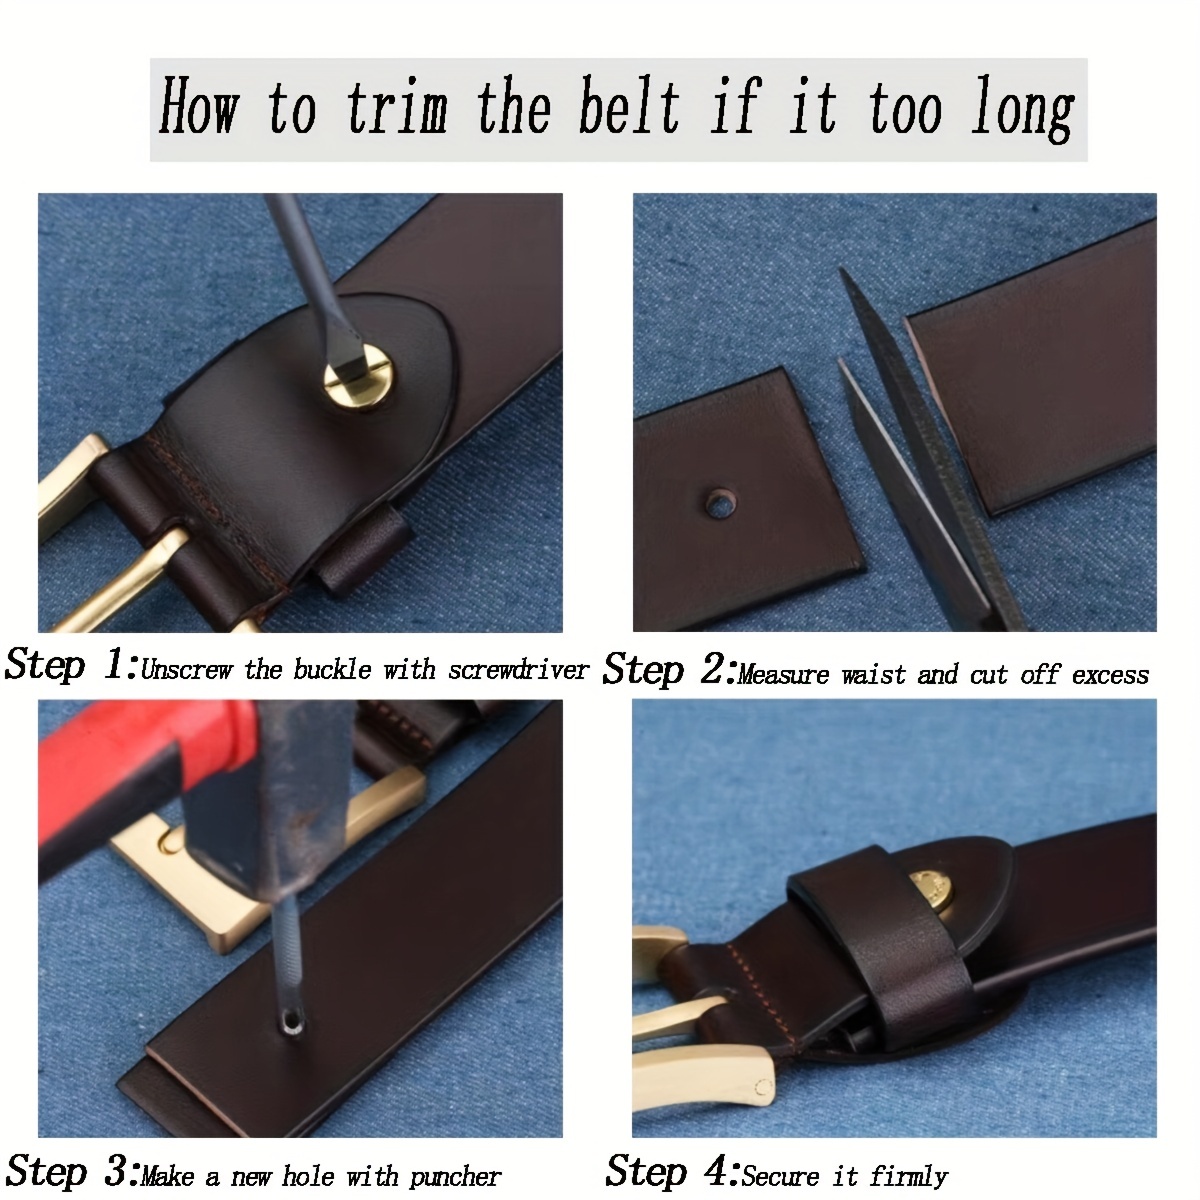 Belt Too Long? 